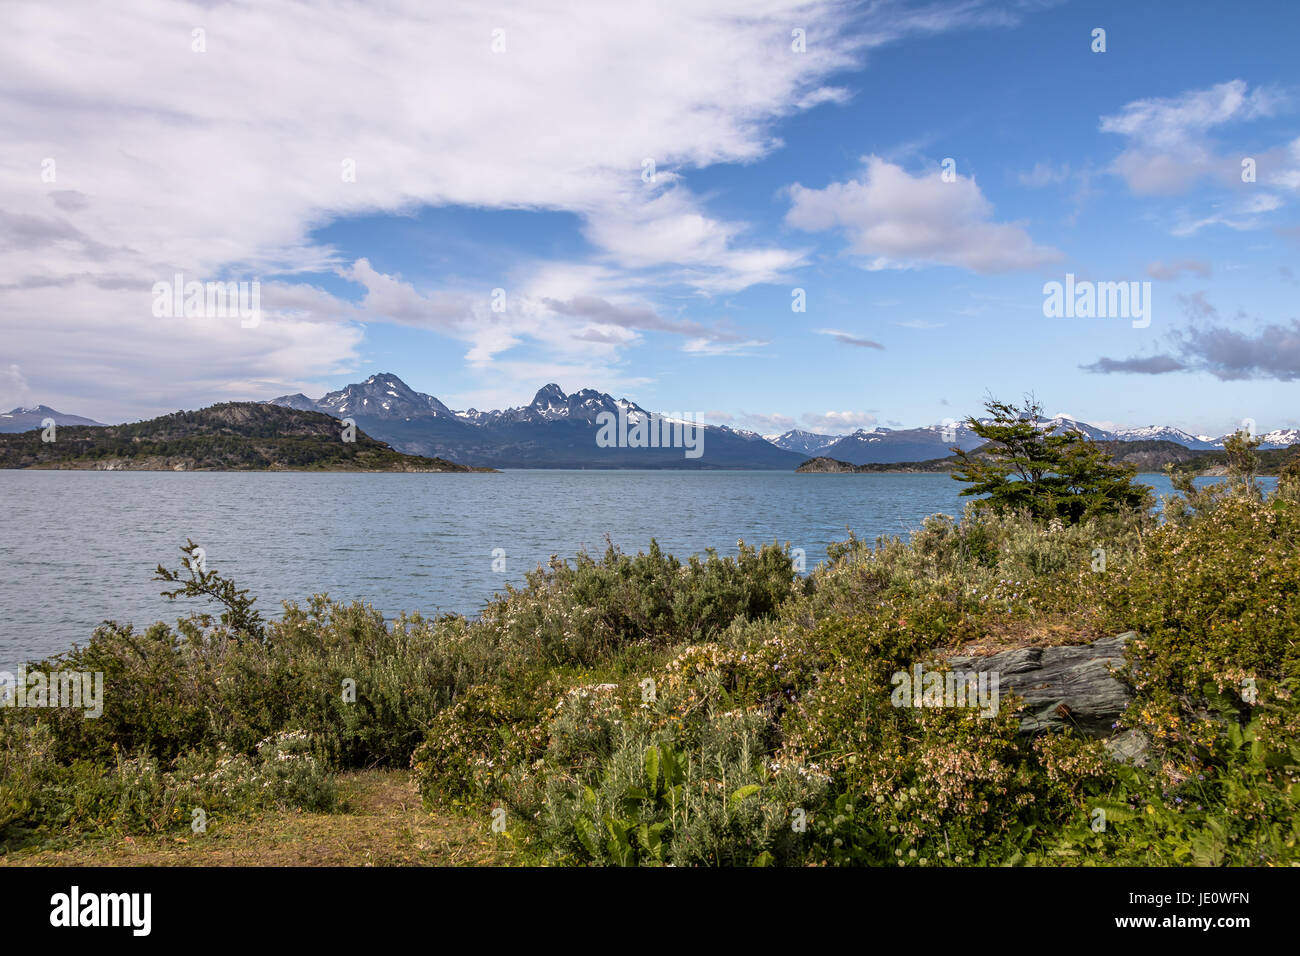 Lapataia Bay at Tierra del Fuego National Park in Patagonia - Ushuaia, Tierra del Fuego, Argentina Stock Photo